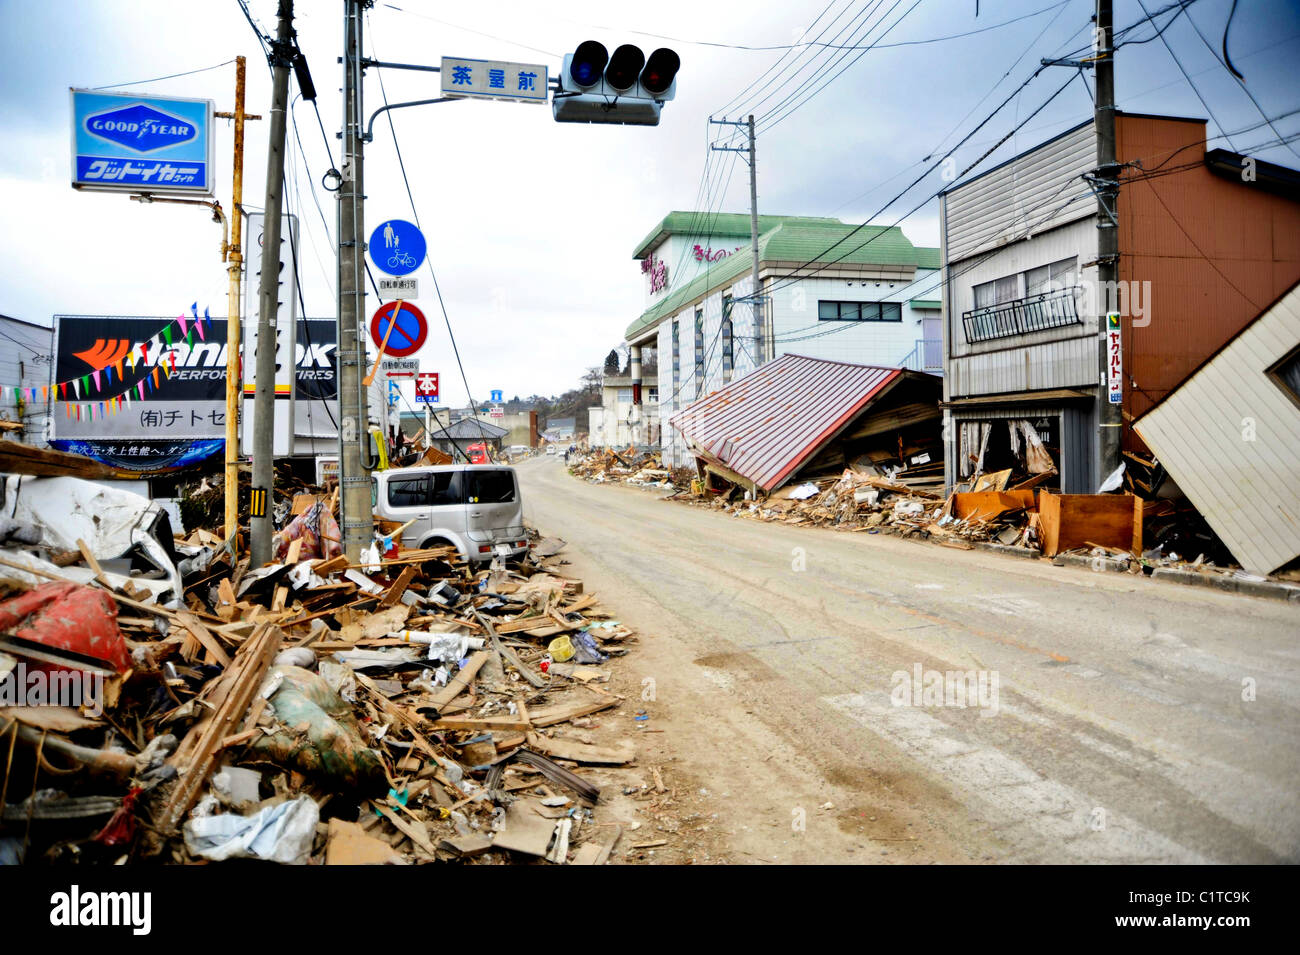 Débris, gravats et de véhicules endommagés bordent les rues de plusieurs blocs dans cette ville de pêcheurs à la suite d'un séisme de magnitude 8,9 Banque D'Images